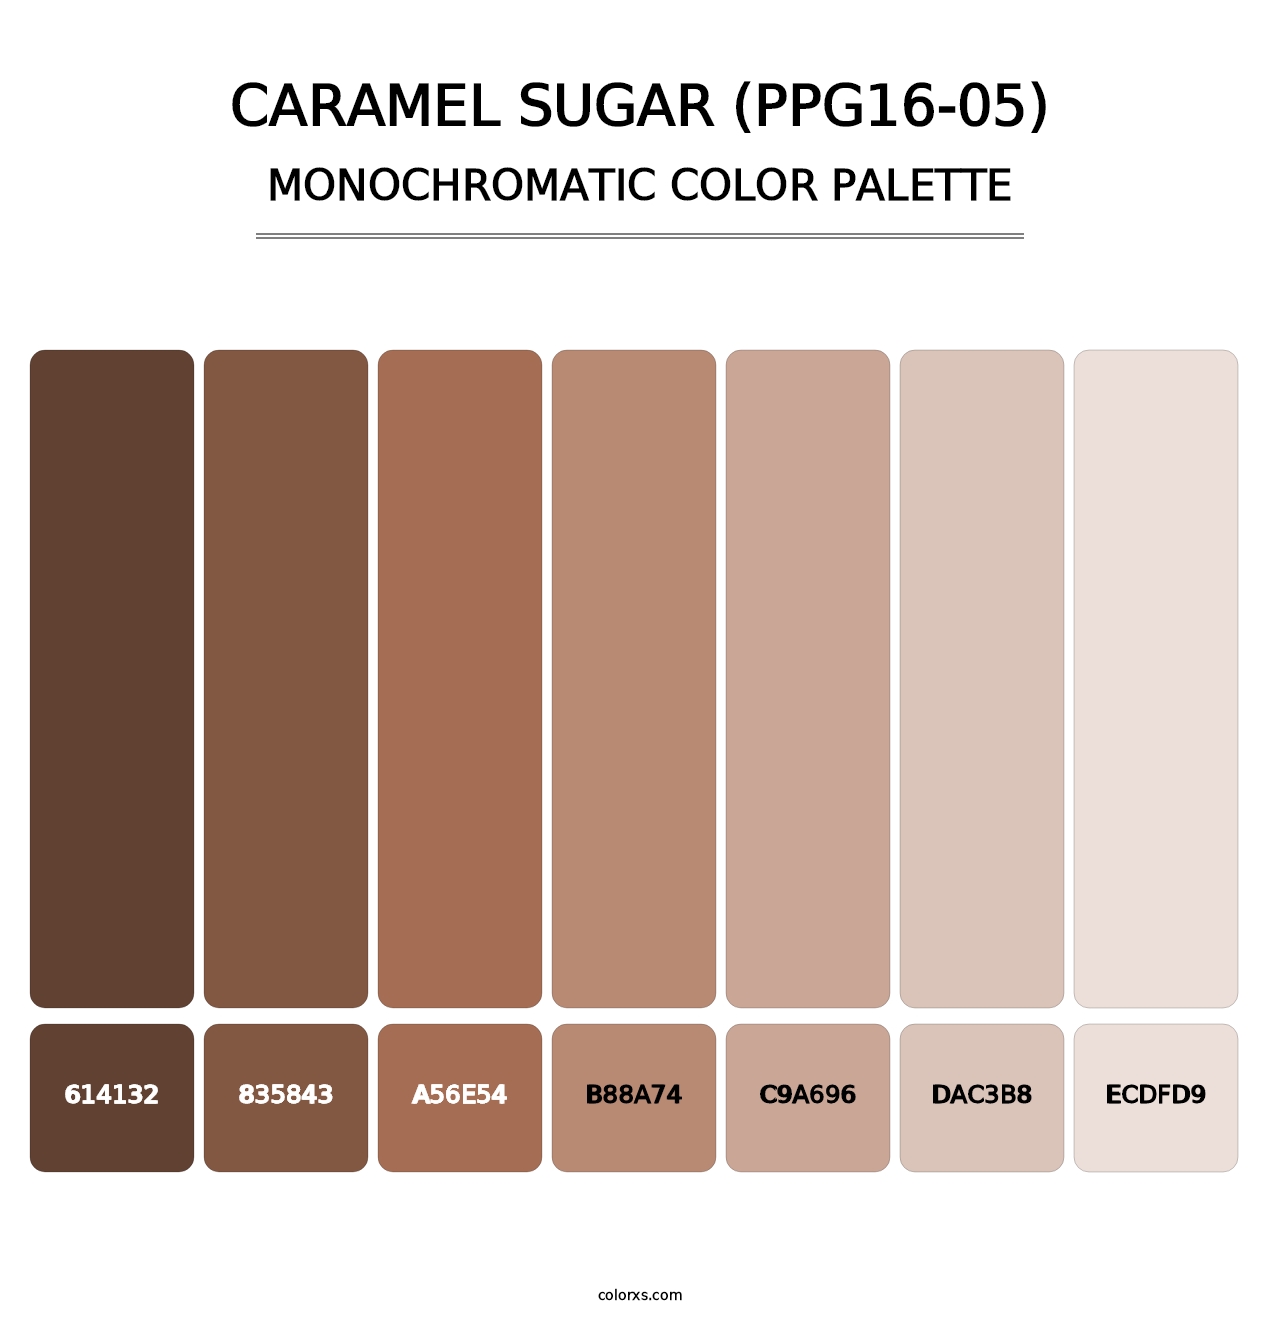 Caramel Sugar (PPG16-05) - Monochromatic Color Palette